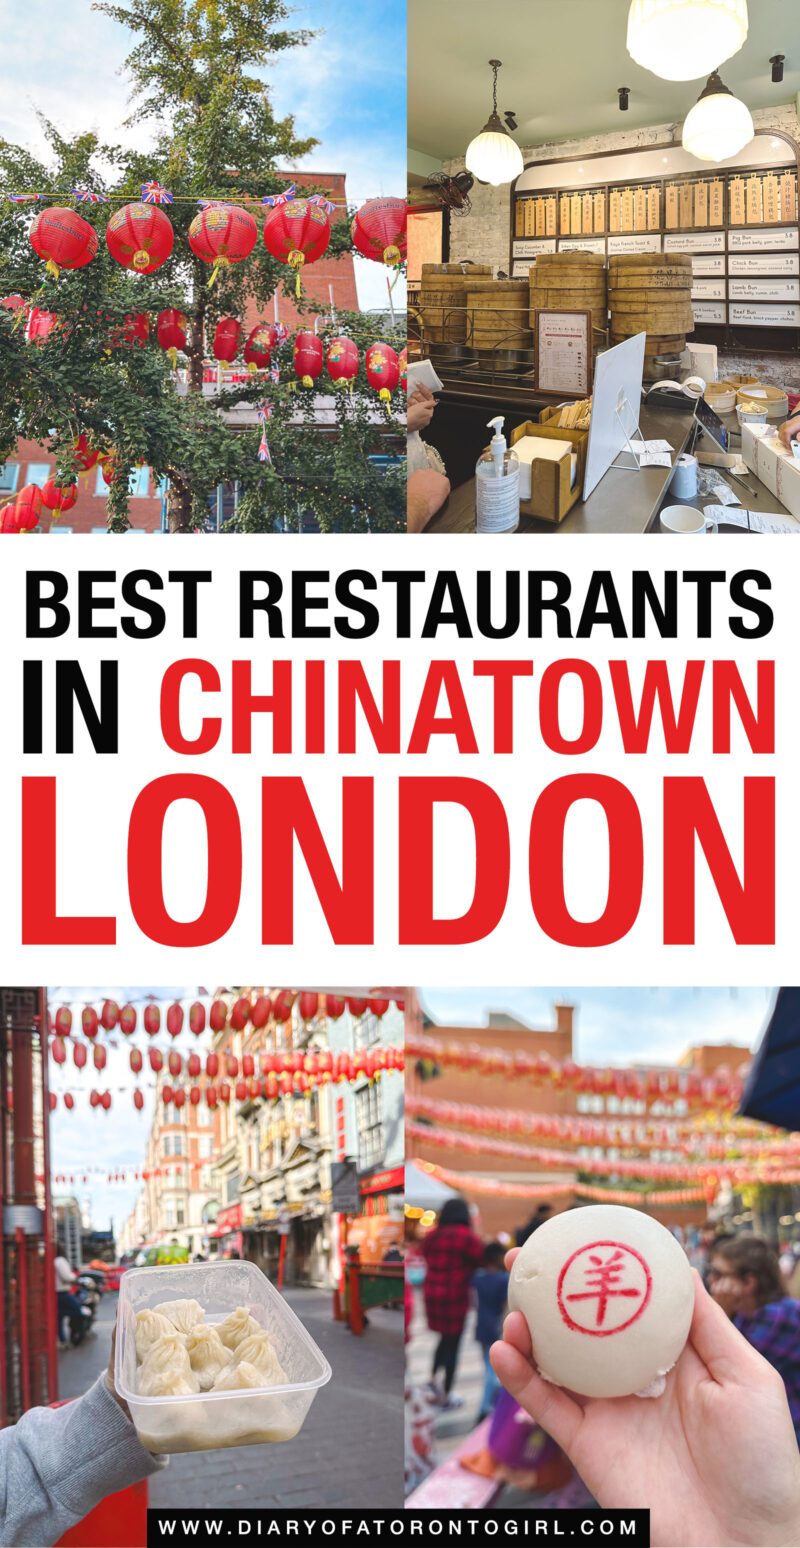 Best restaurants in Chinatown London UK